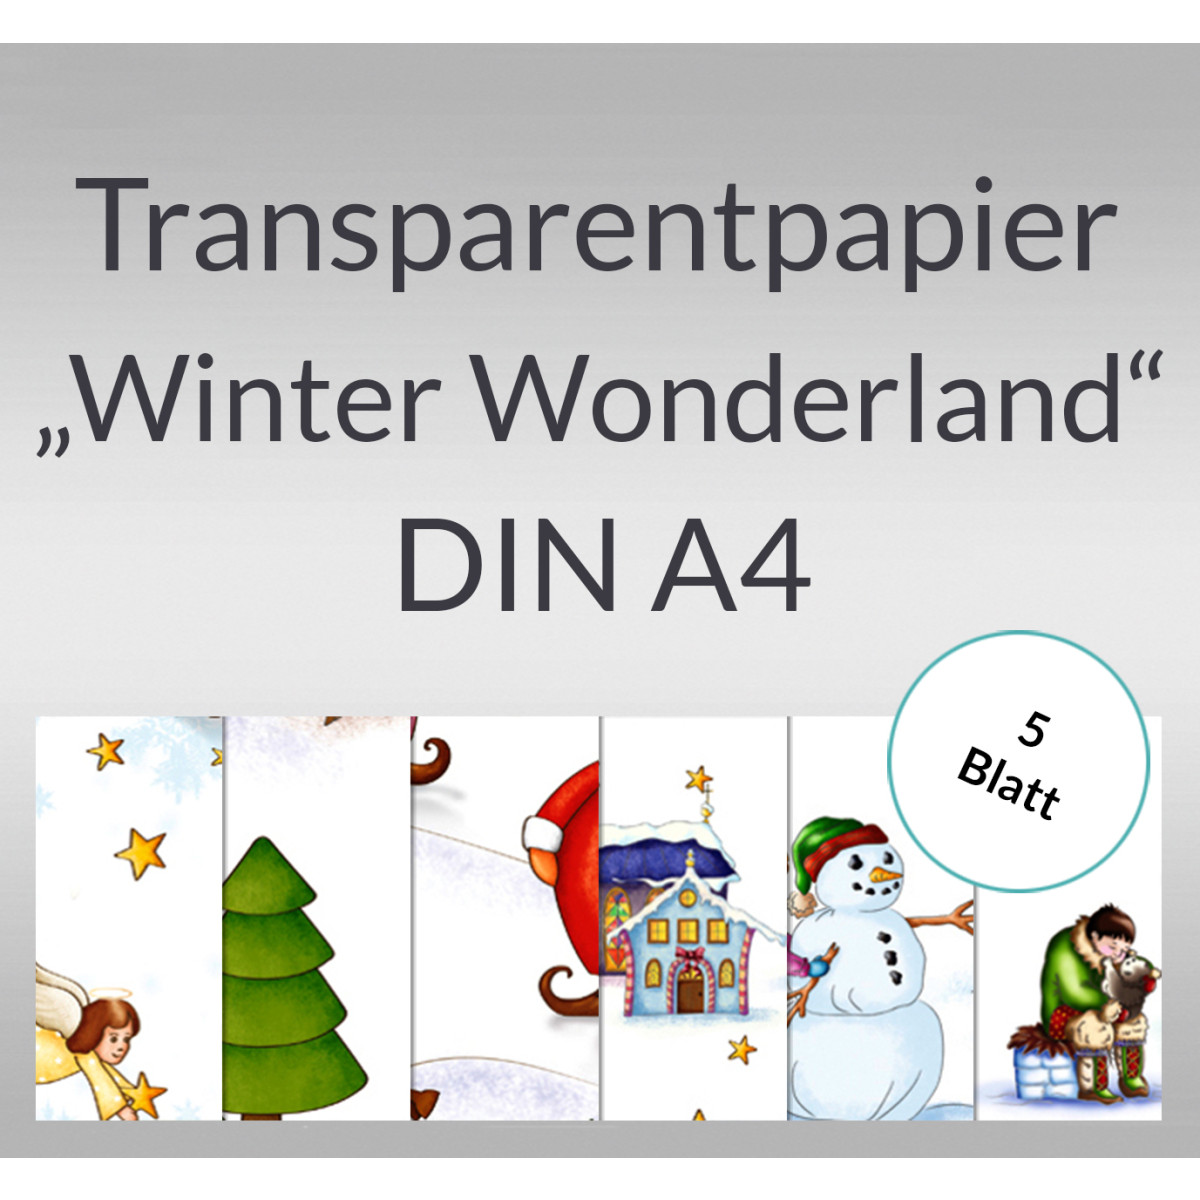 Transparentpapier "Winter Wonderland" DIN A4 - 5 Blatt